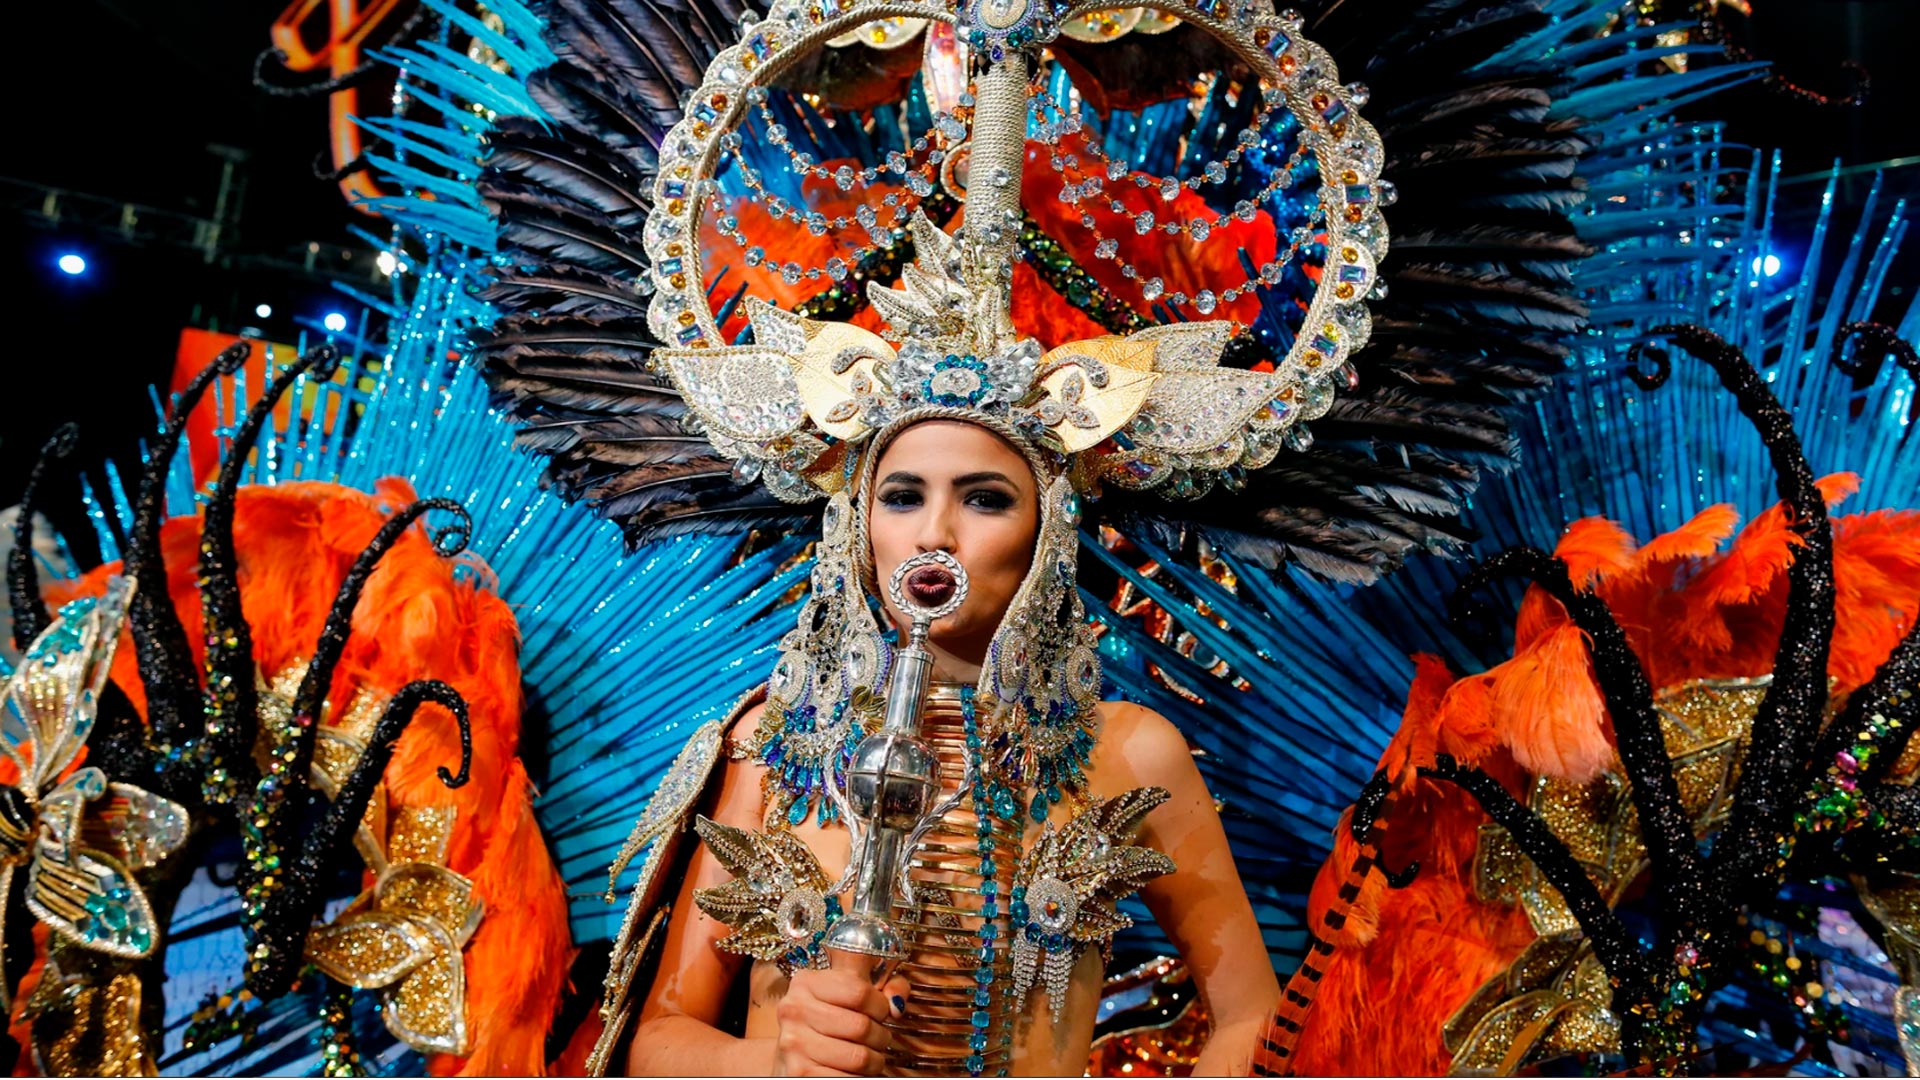 Videoreport Canarias retransmitirá el Carnaval de Tenerife